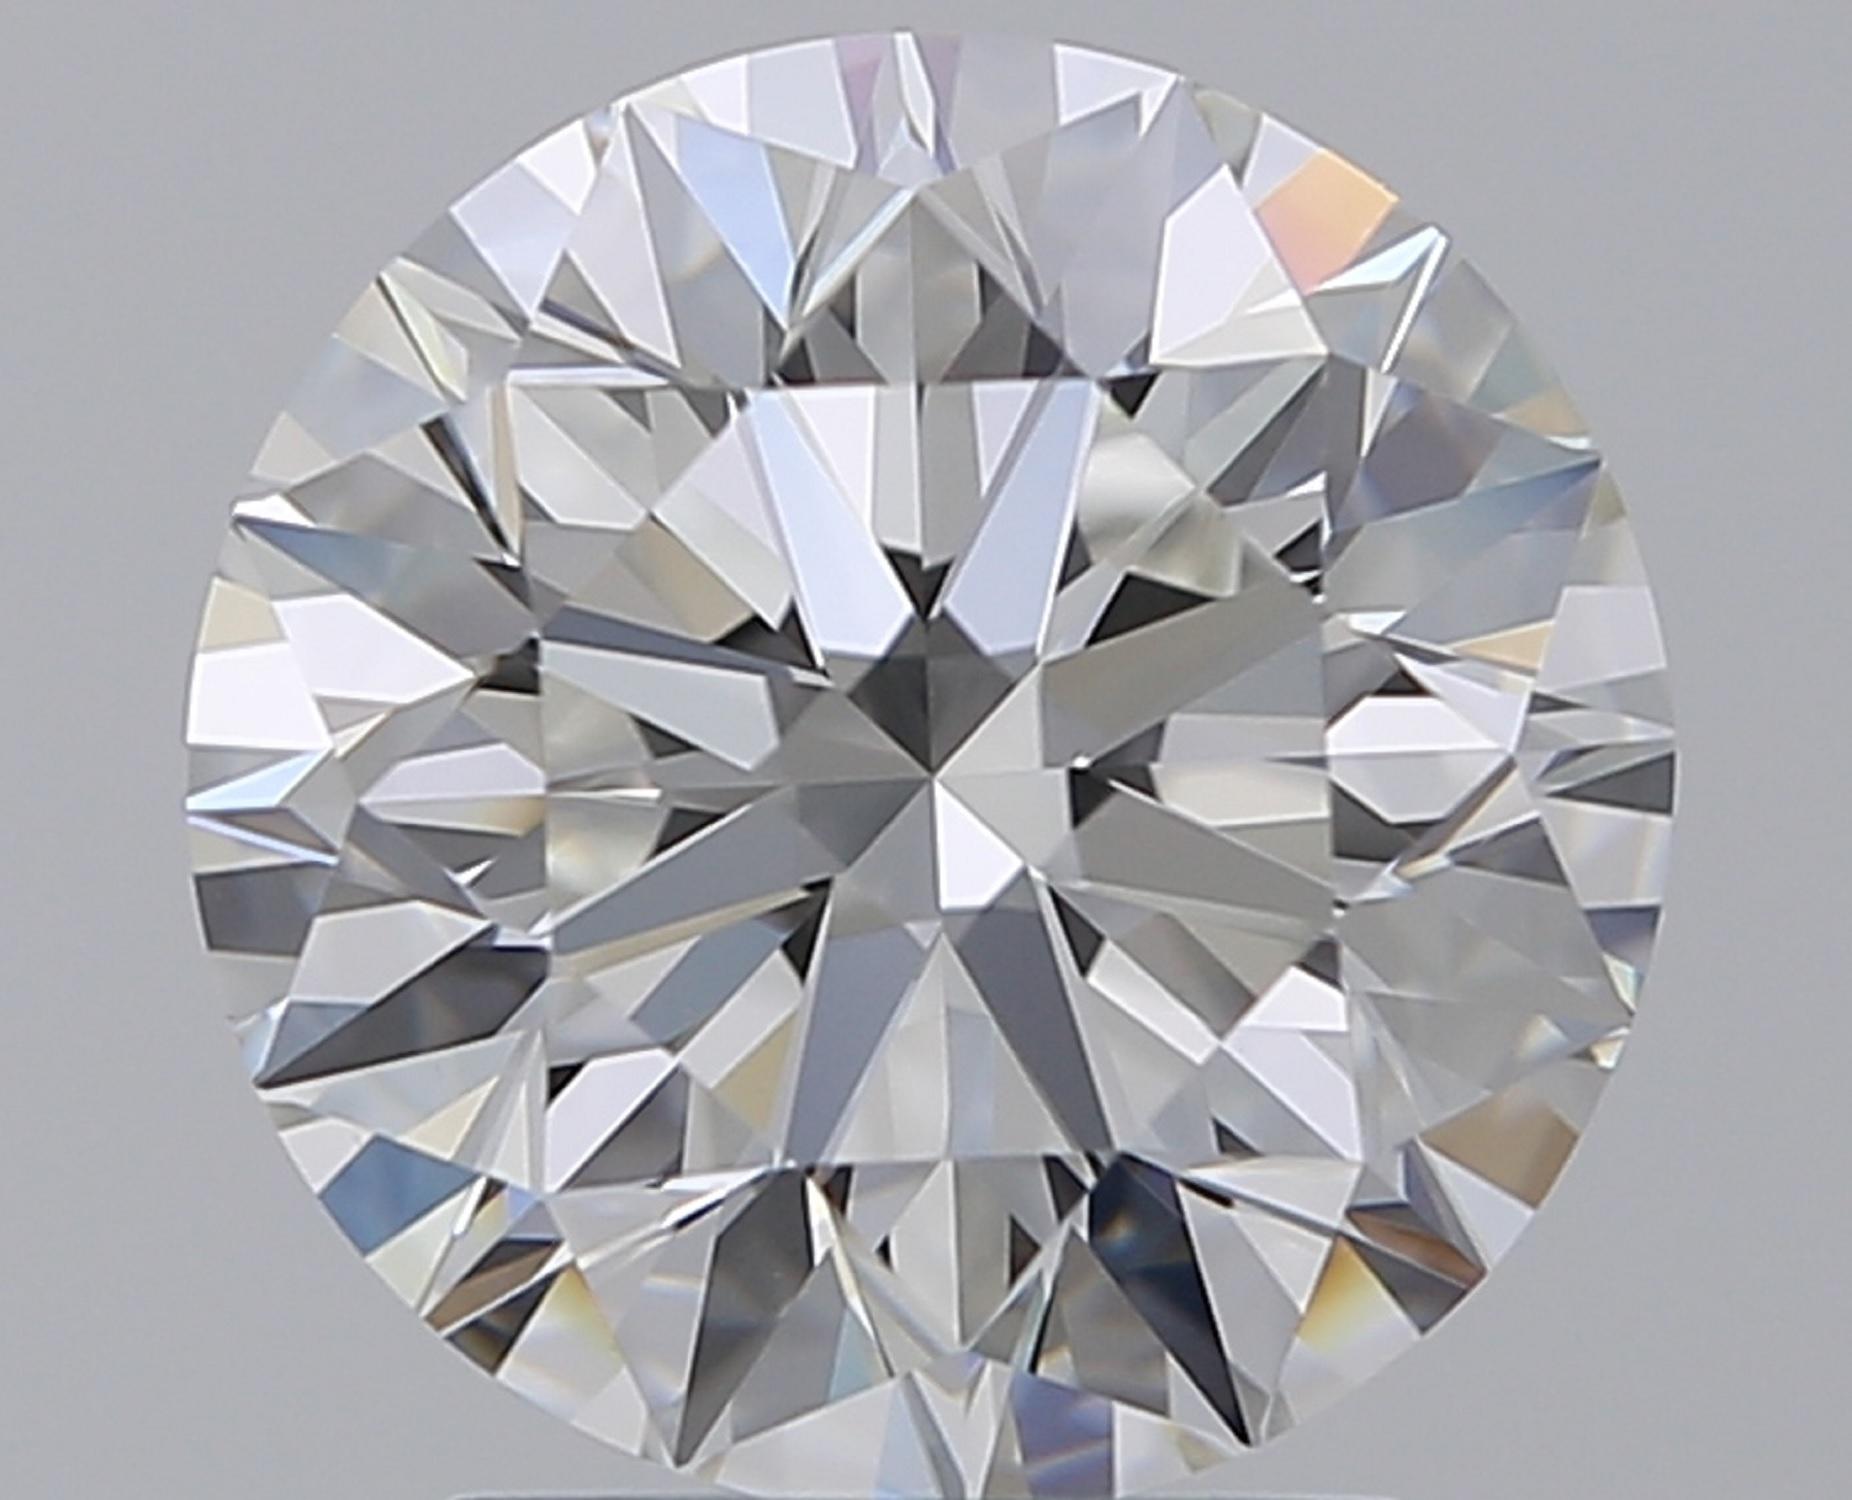 Bague à diamant rond de 4.50 carats certifiée par le GIA 
F COLOR
VS2 CLARITÉ
Triple excellence en matière de polissage et de symétrie
